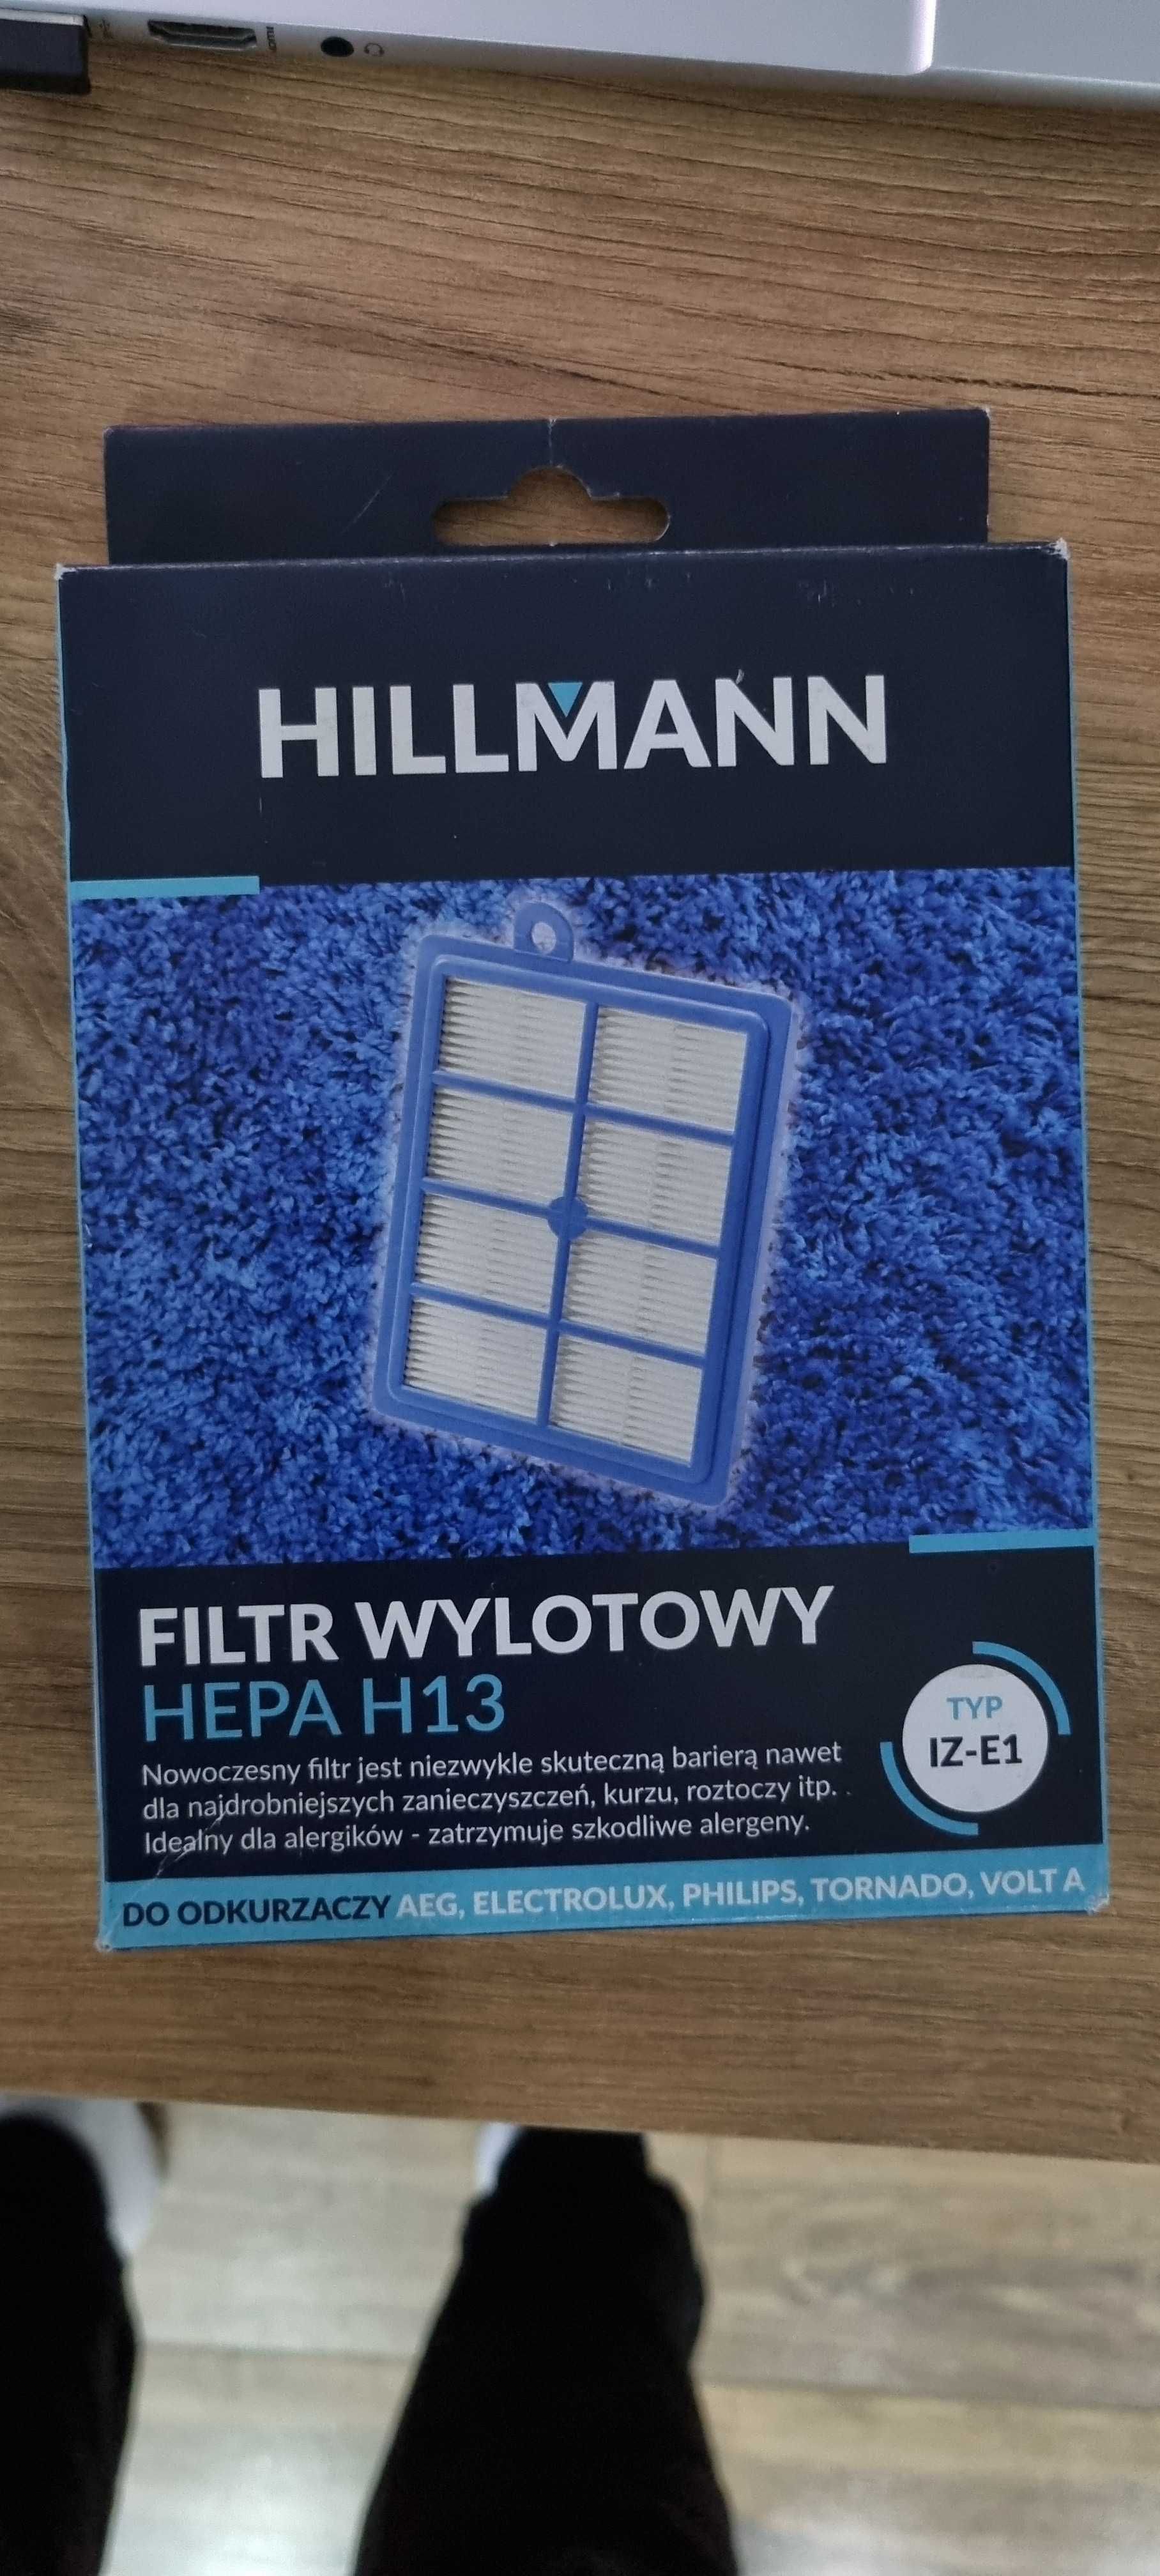 Filtr wylotowy Hepa h13